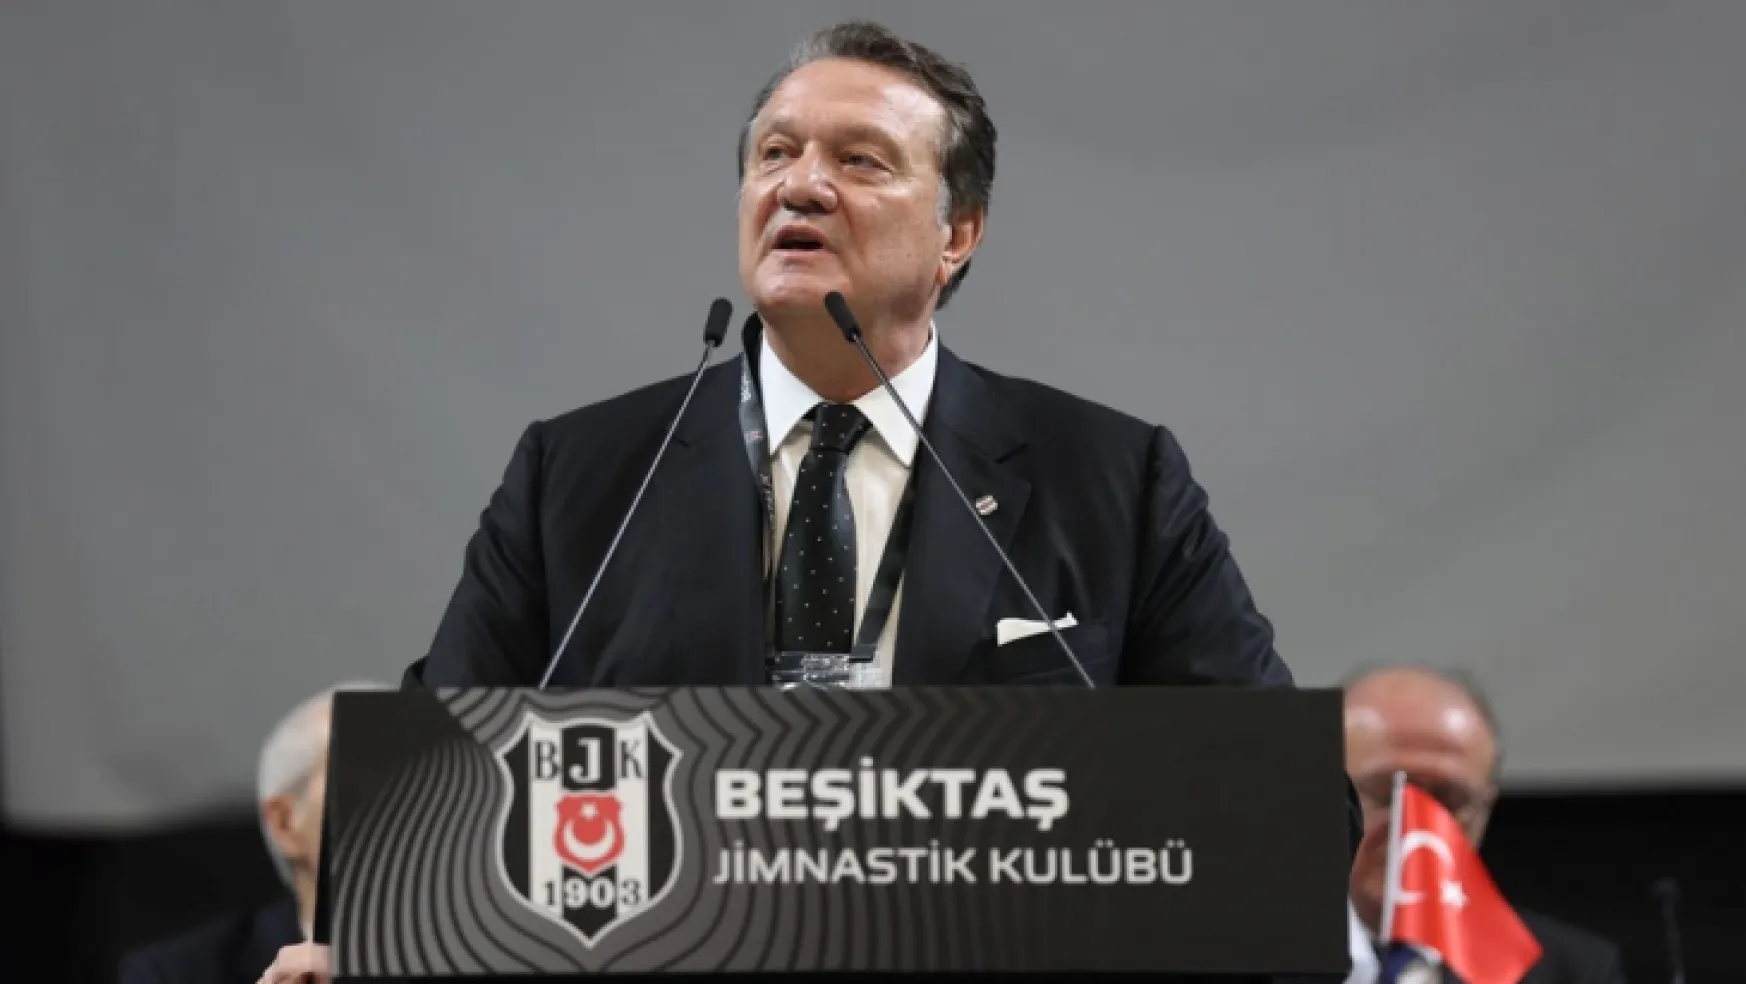 Beşiktaş'ın yeni başkanı Hasan Arat oldu